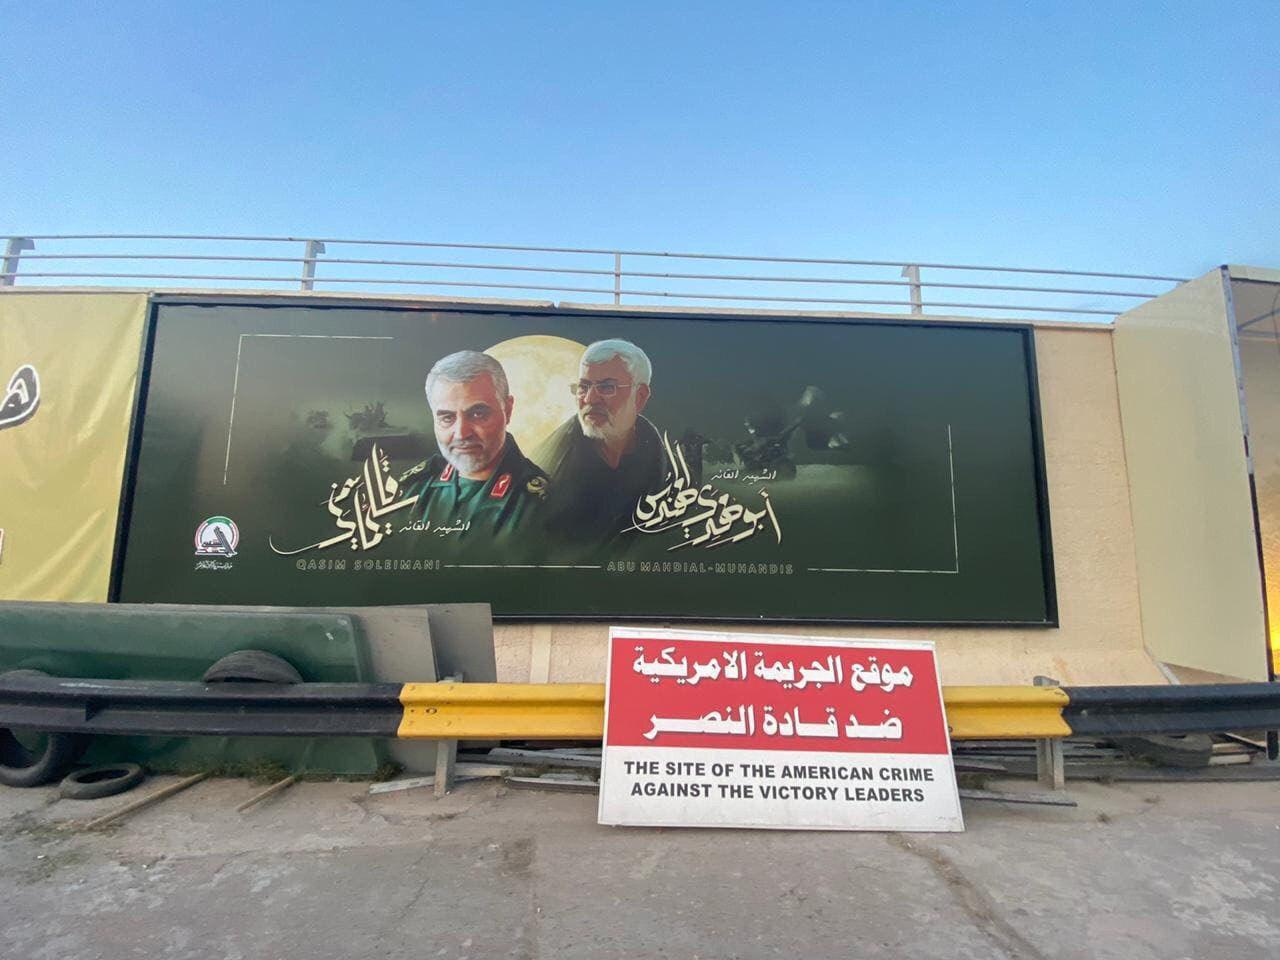 دیوار فرودگاه بغداد، تابلوی جنایت آمریکا علیه رهبران مقاومت+ تصاویر